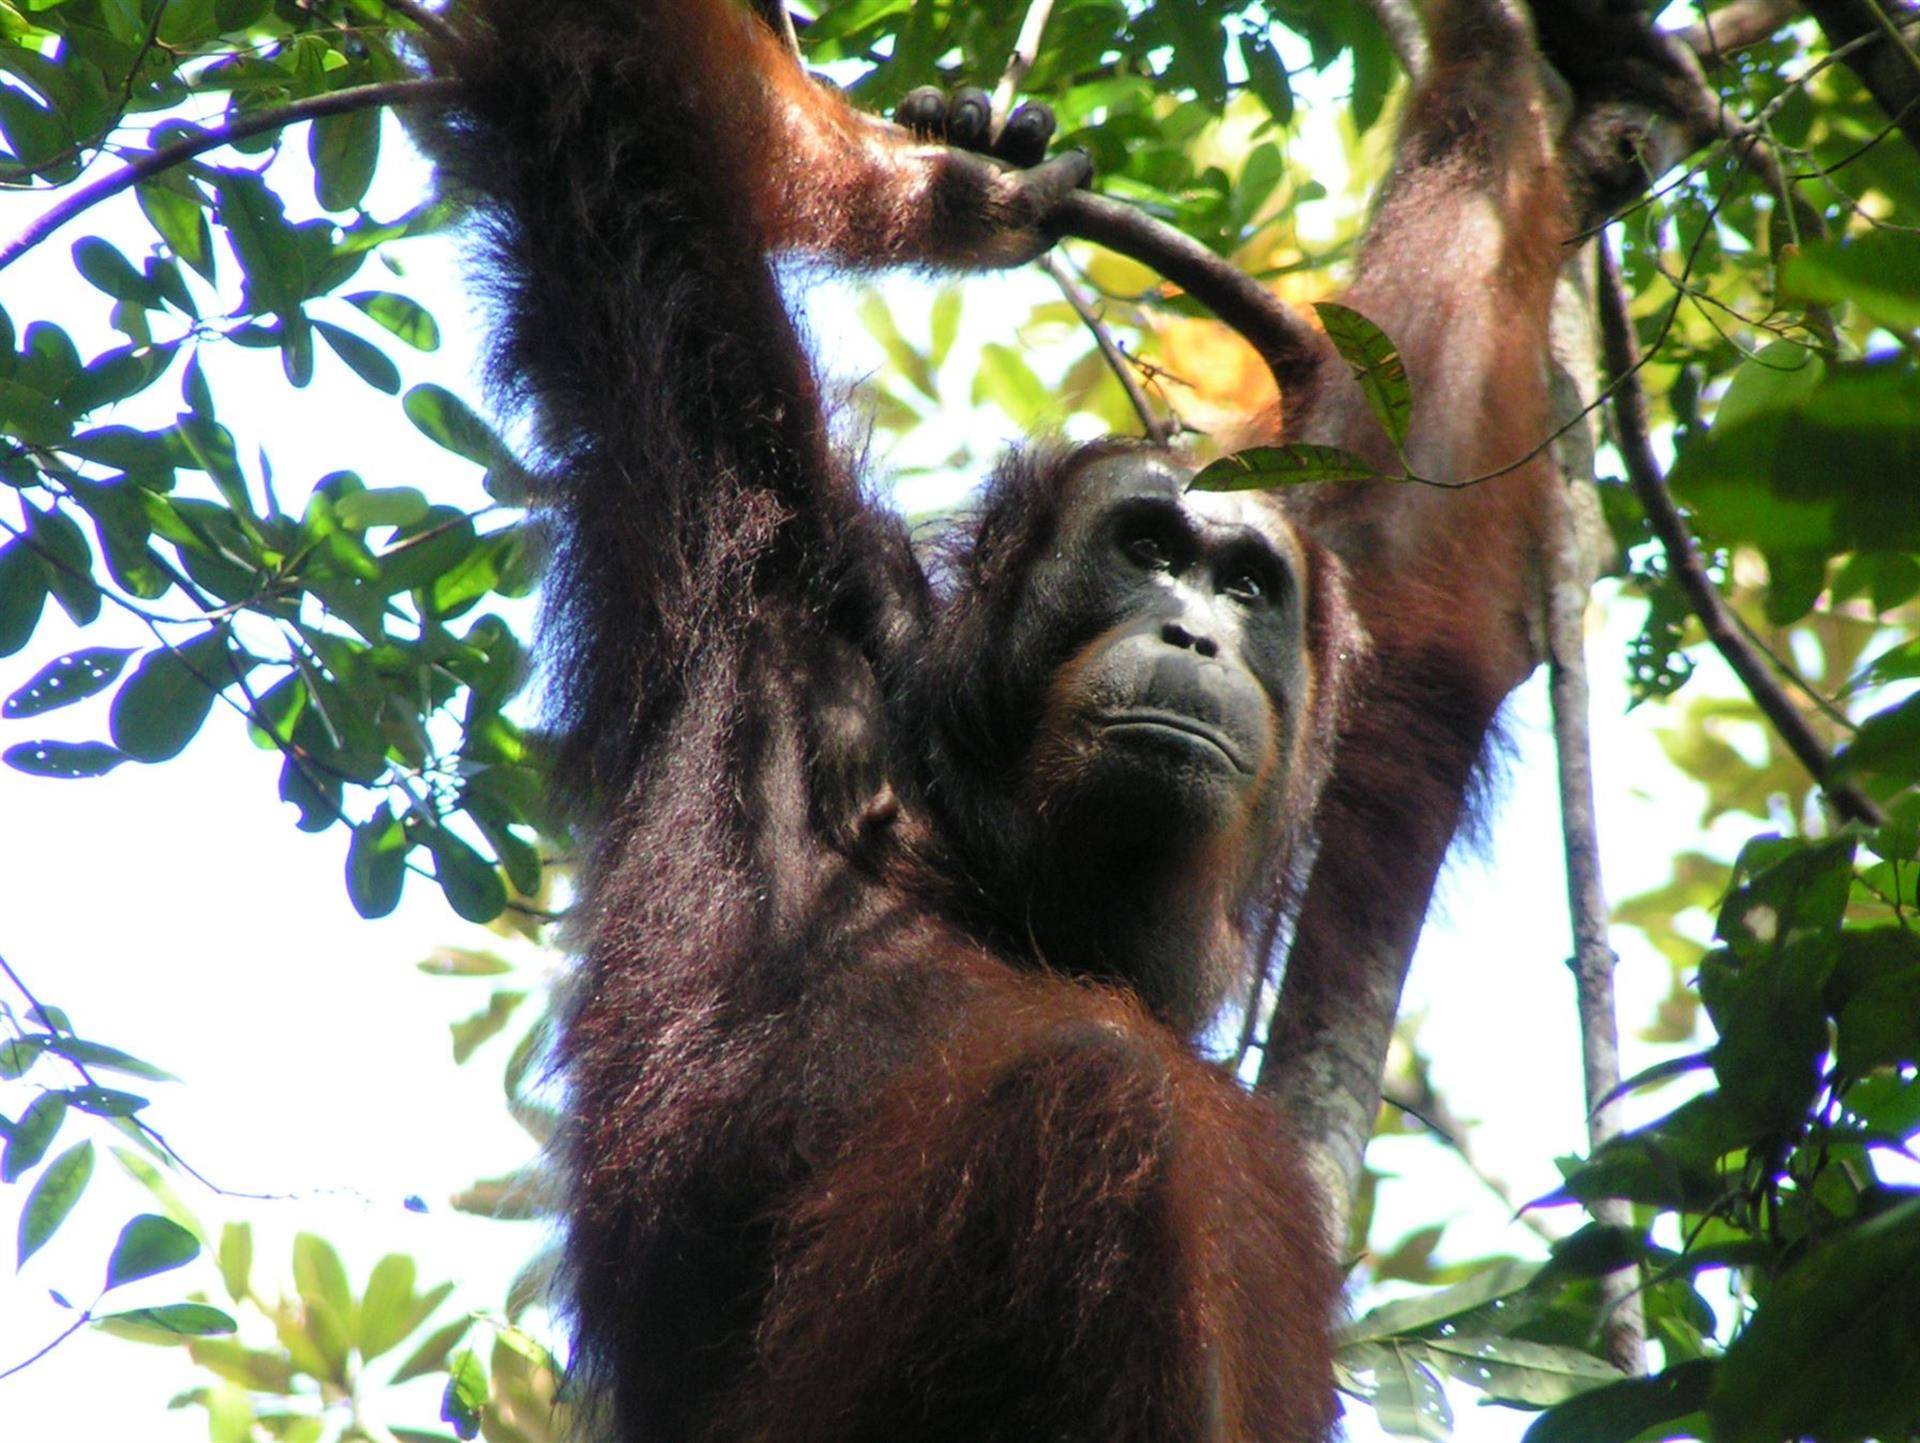 Los orangutanes adaptan su vocabulario al entorno social, como los humanos